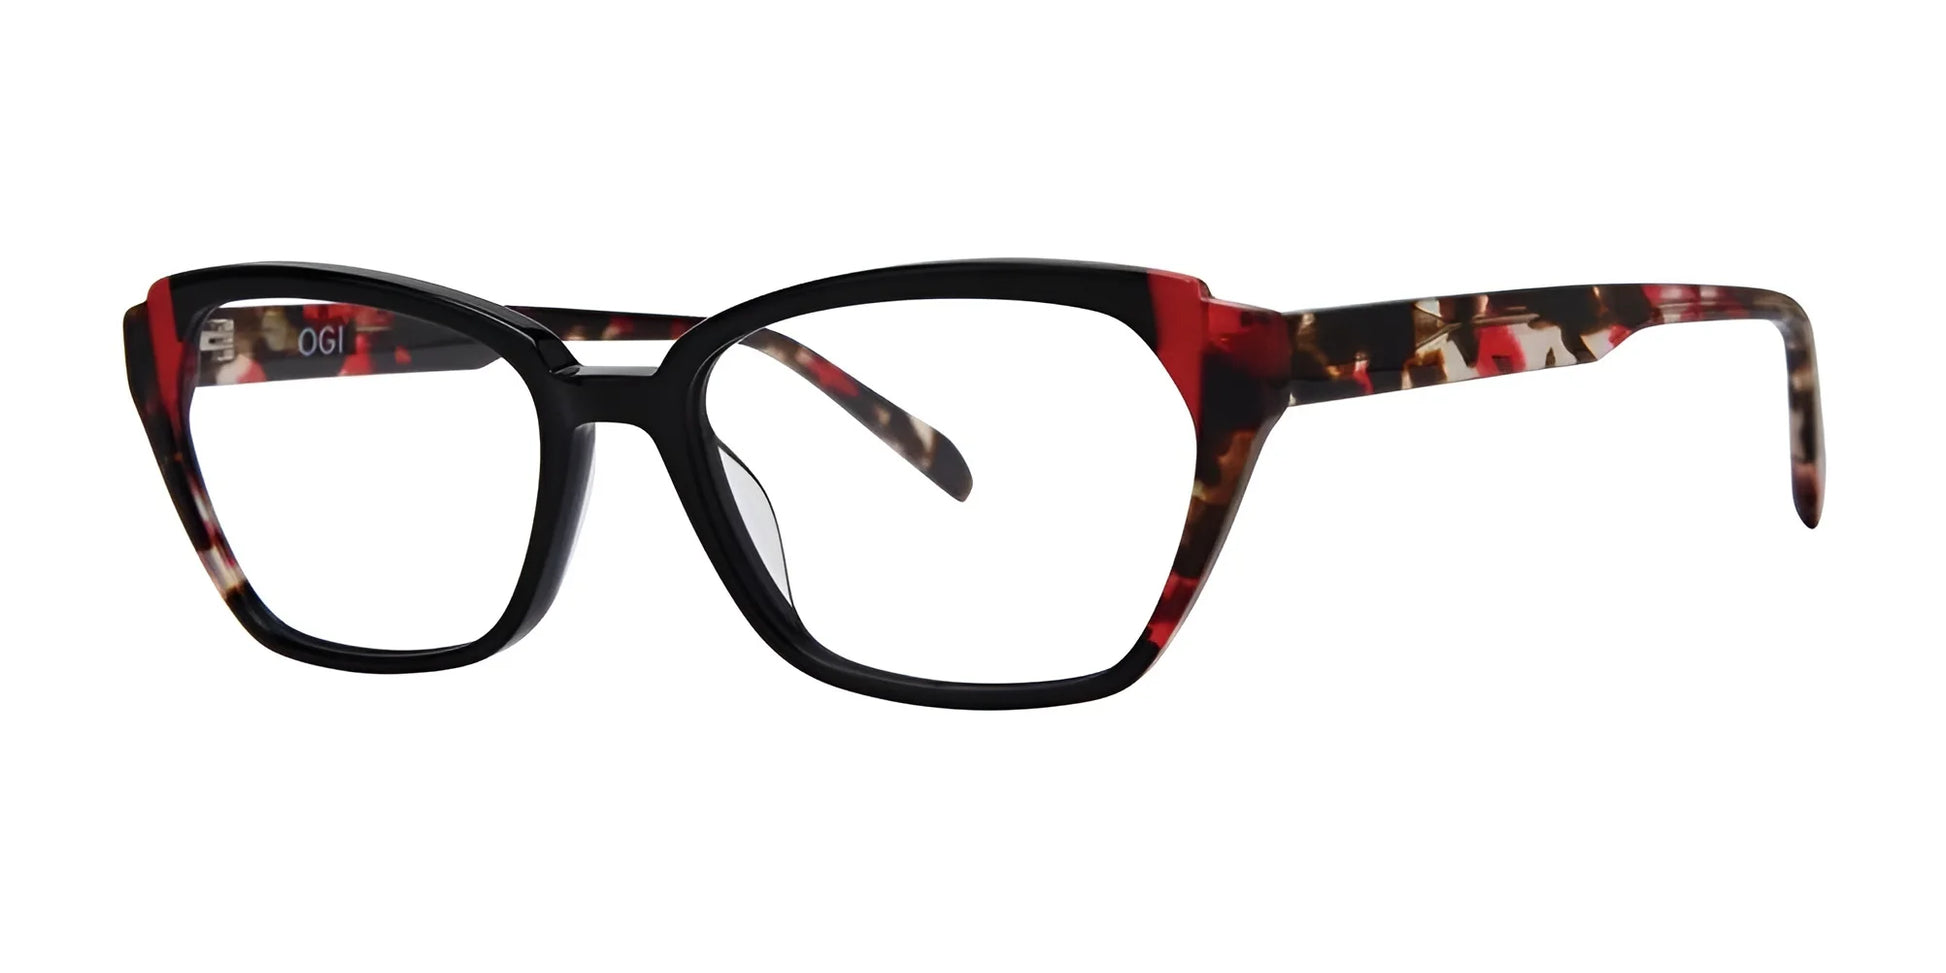 OGI BUTTER QUEEN Eyeglasses Black Red Tortoise